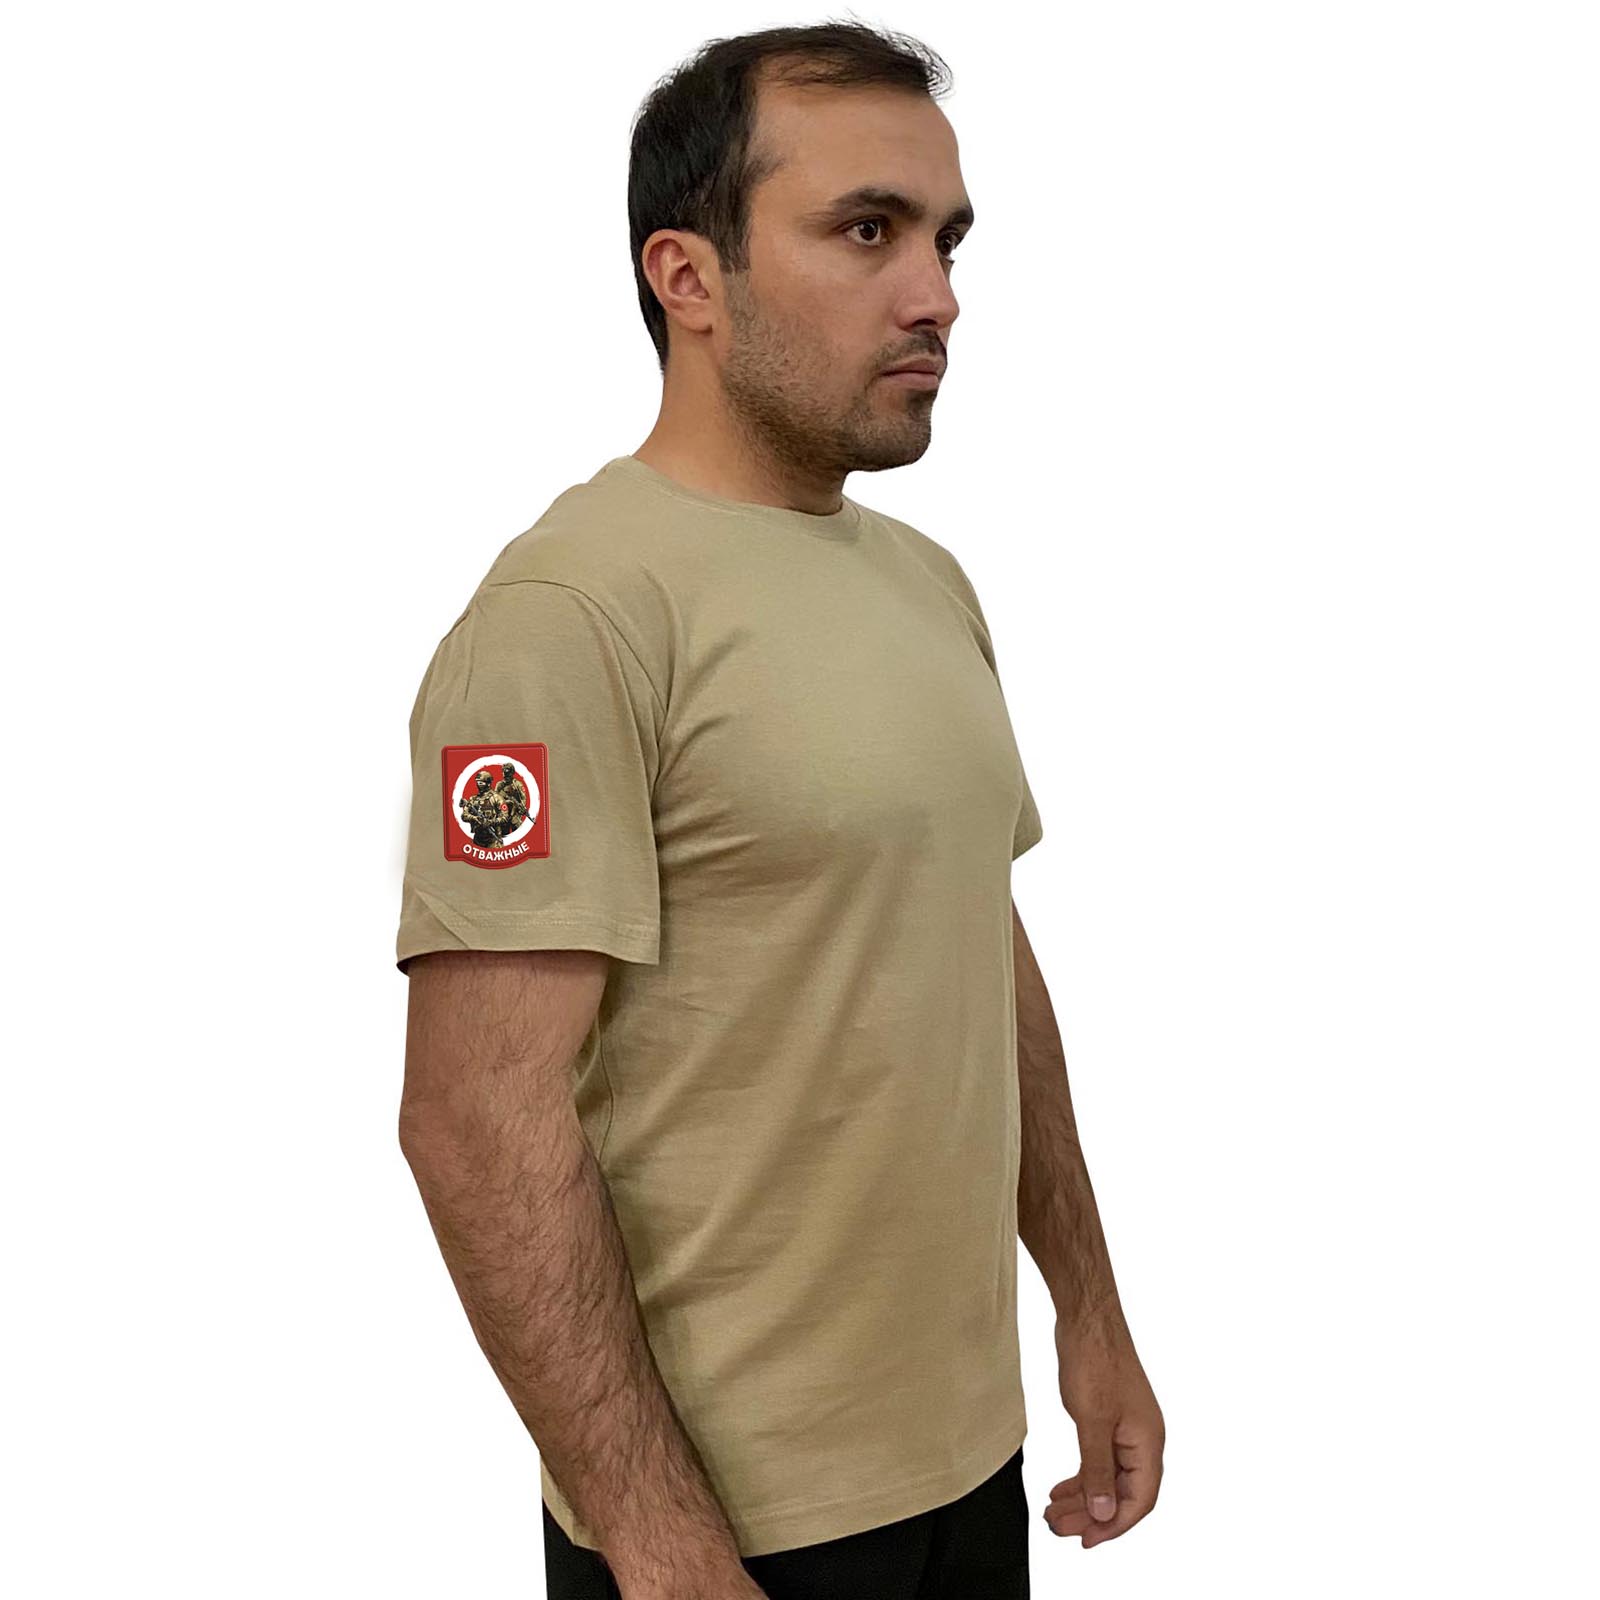 Песочная футболка с термотрансфером "Отважные" на рукаве